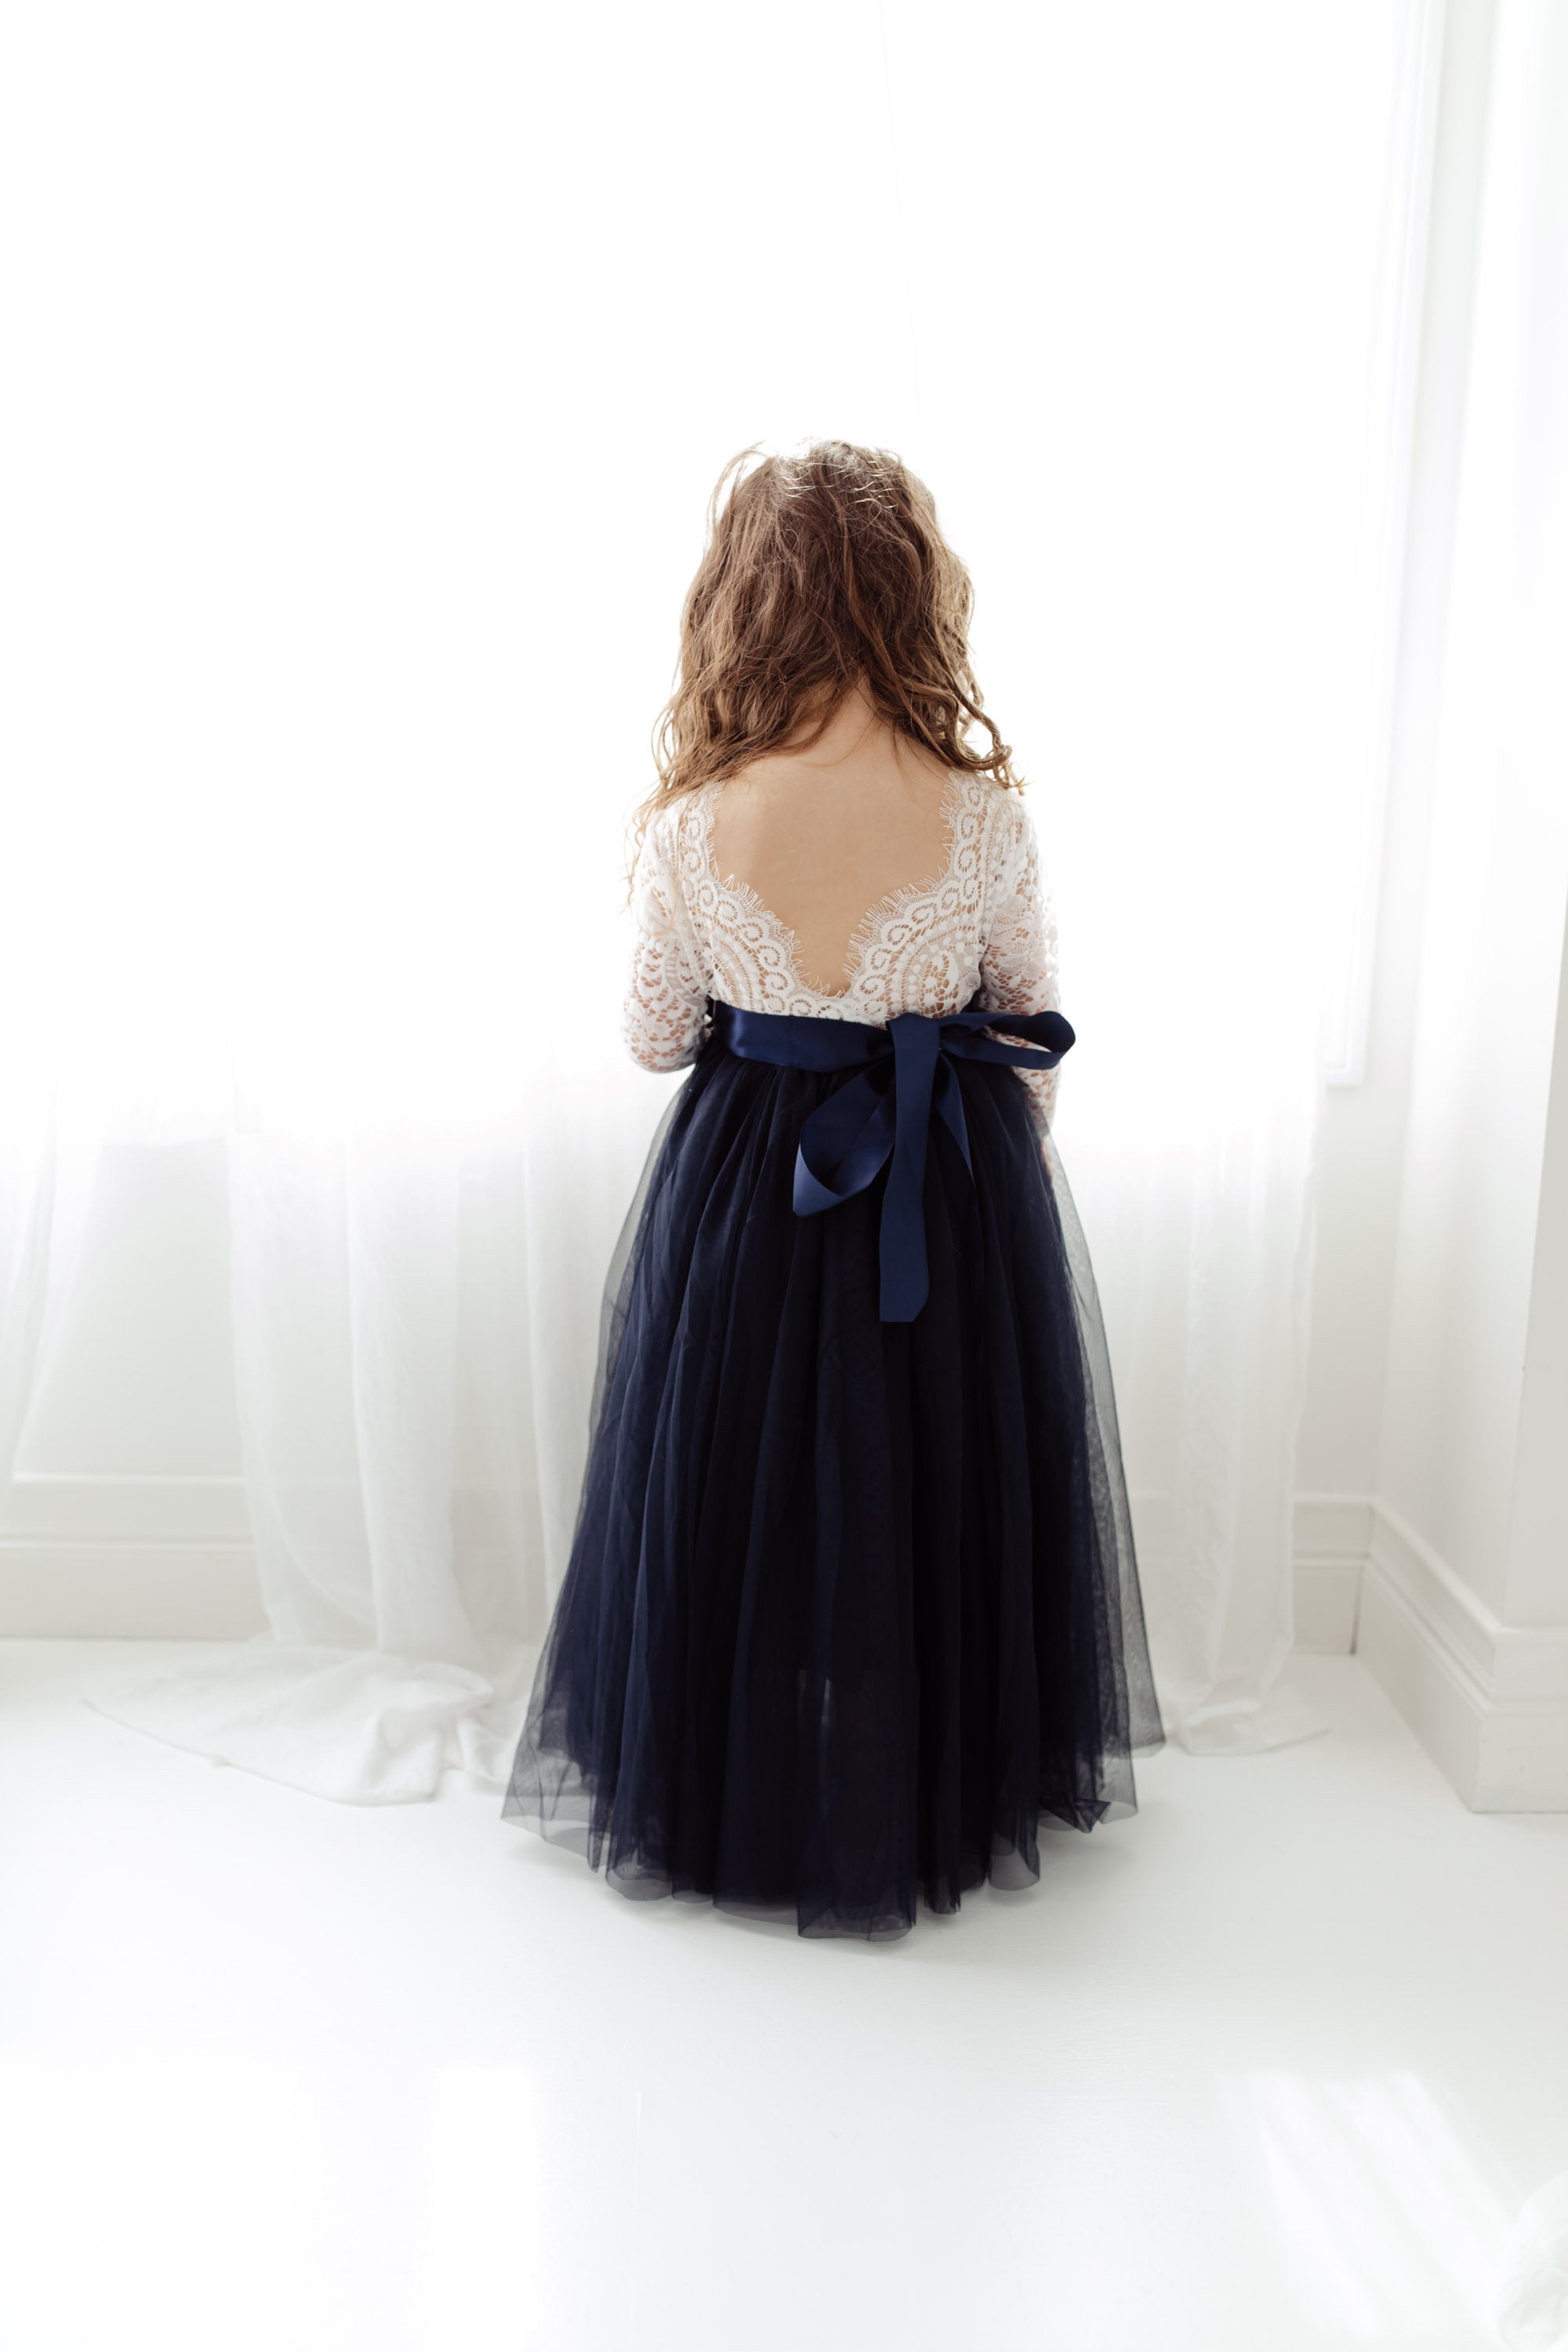 NAVY BLUE Flower Girl Dress, Baby Girl Dress, Toddler Tulle Dress